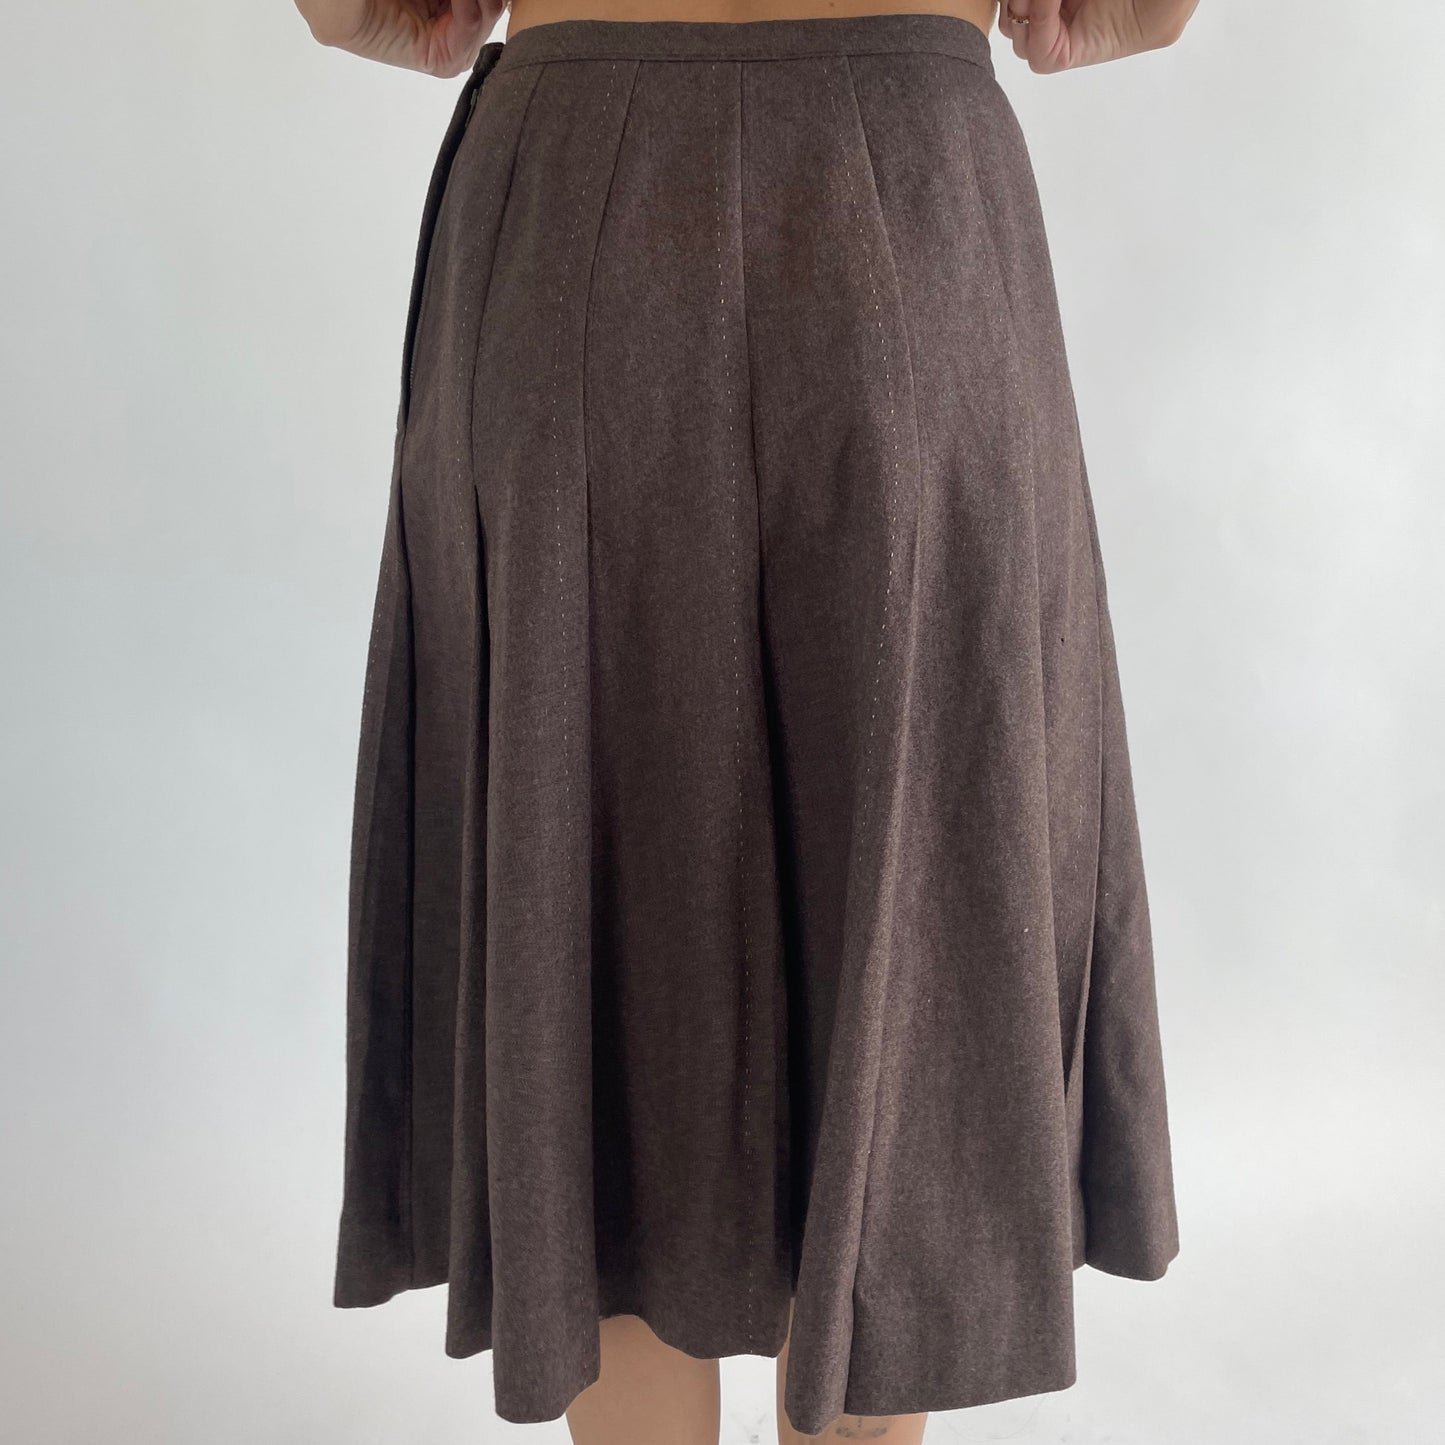 brown wool pleated skirt